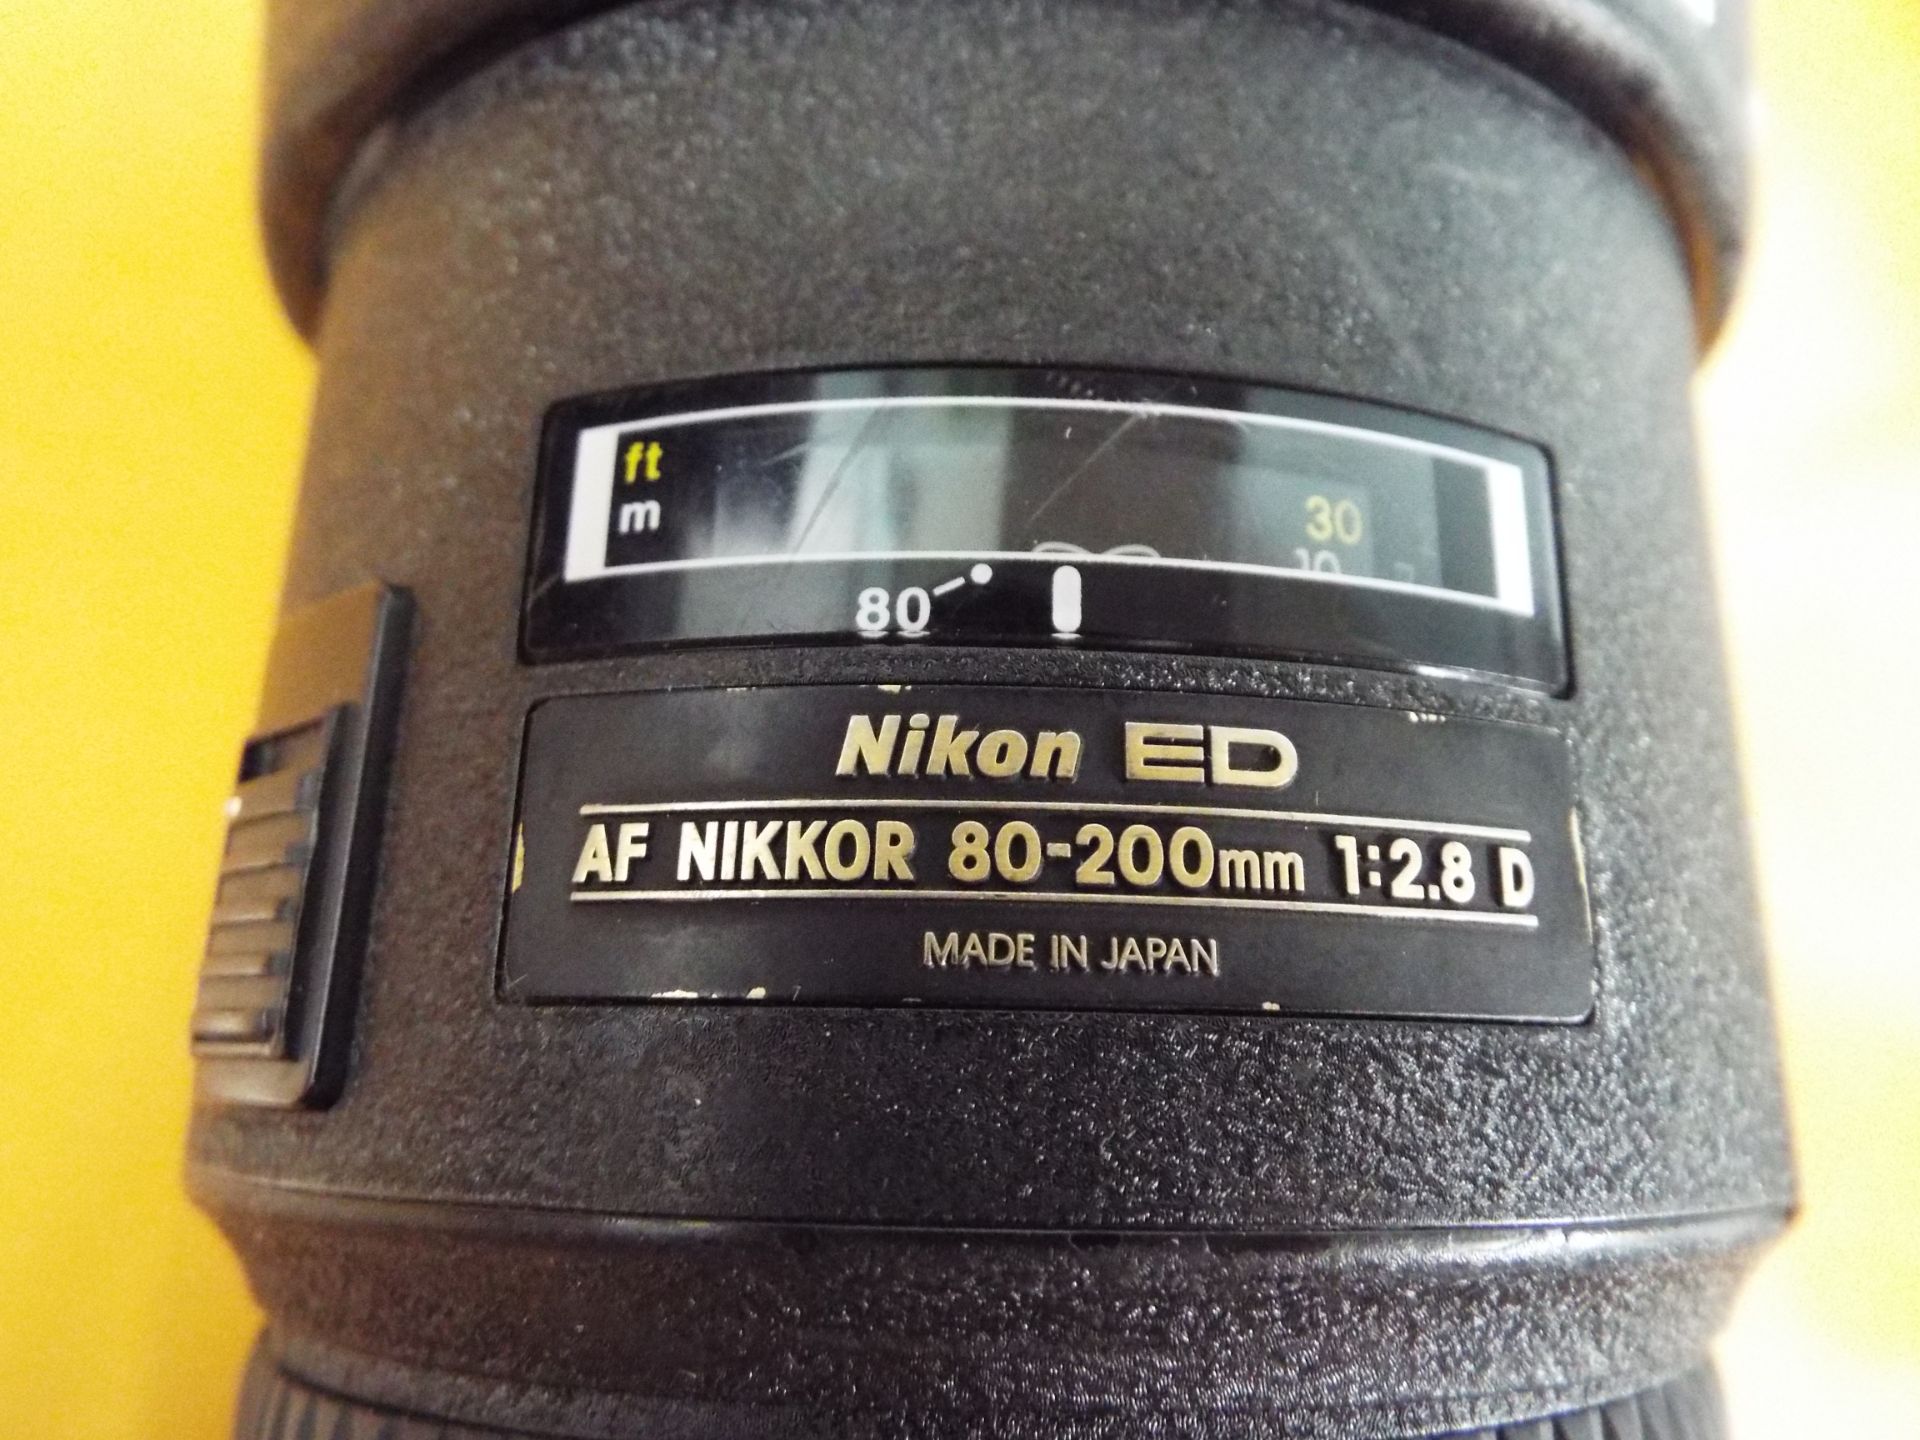 Nikon ED AF Nikkor 80-200mm 1:2.8 D Lense with Leather Carry Case - Image 3 of 7